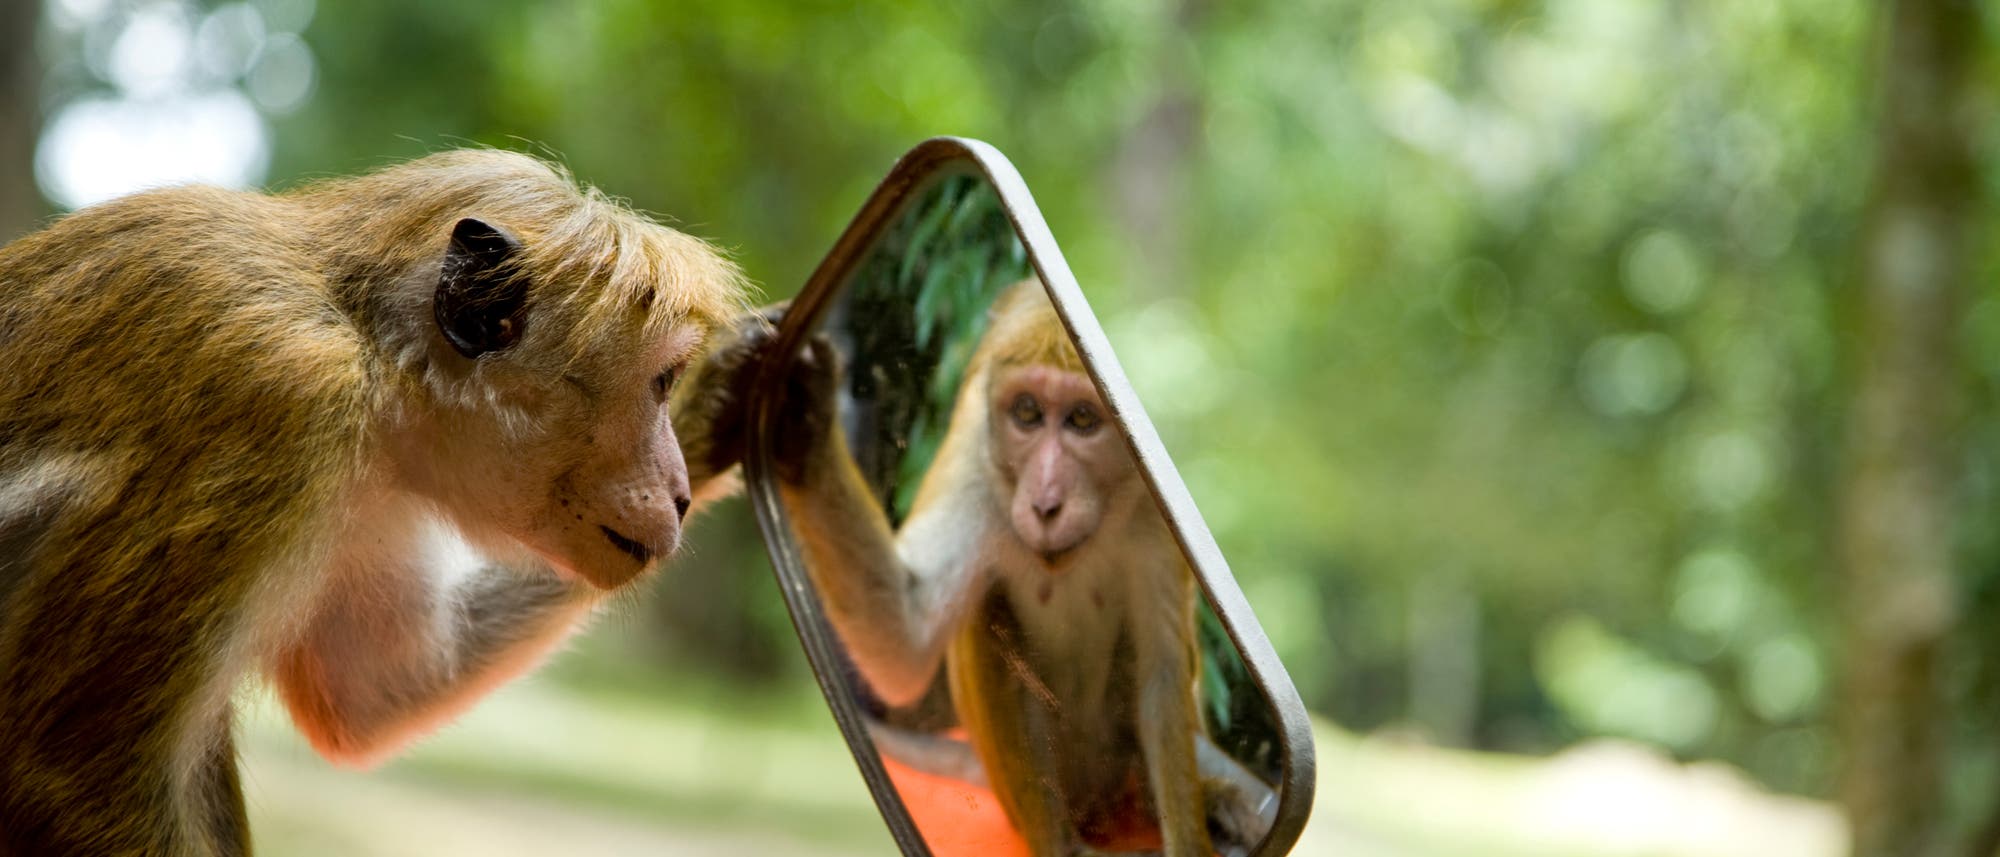 Makake betrachtet sich im Spiegel